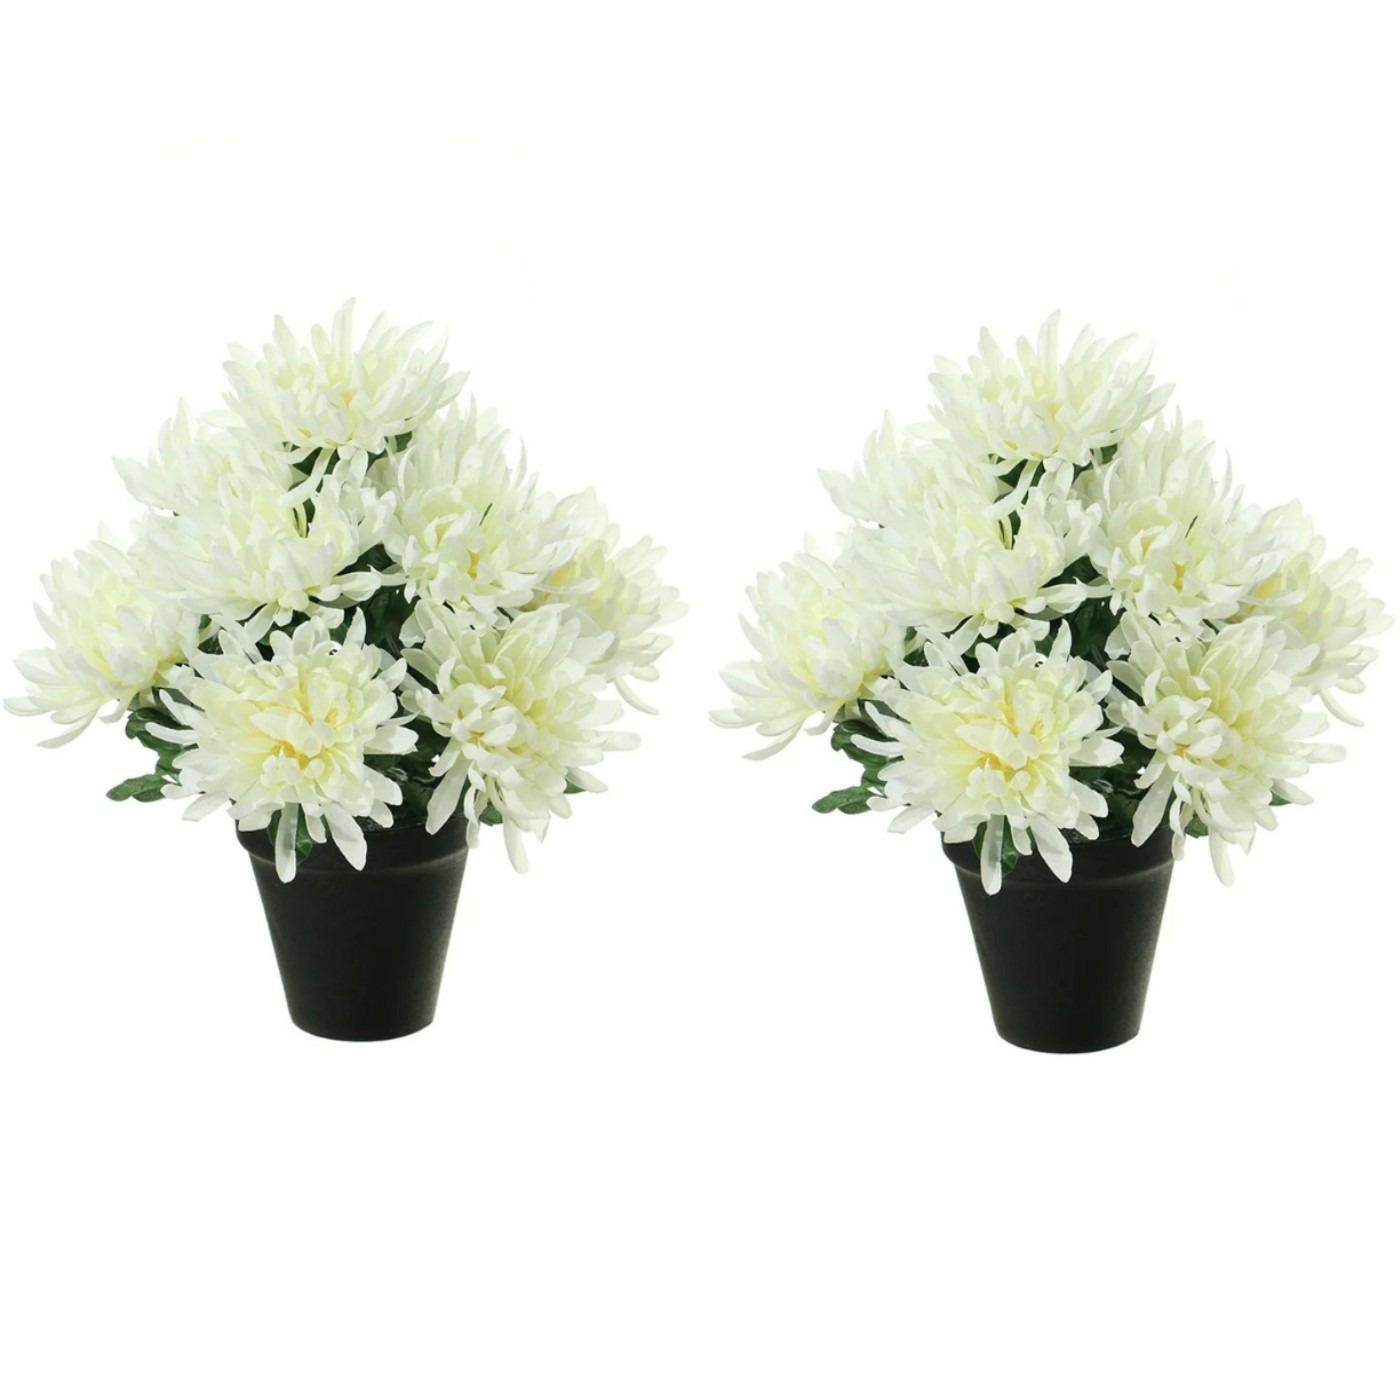 Kunstbloemen plant in pot - 2x - creme wit tinten - 28 cm - Bloemenstuk ornament -